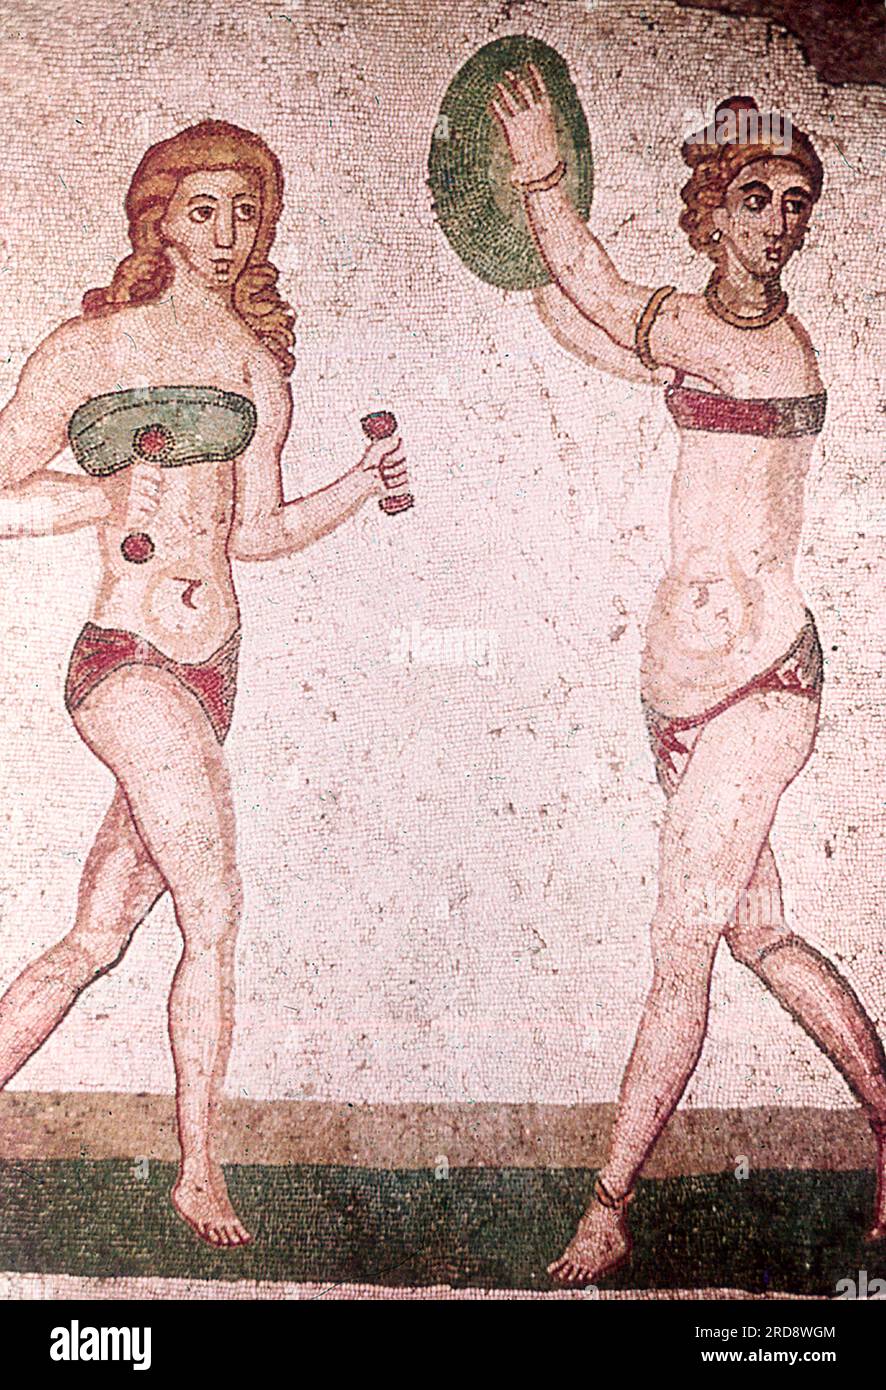 Dieses Foto eines Mosaiks von zwei Mädchen, das dem heutigen Bikini ähnelt, wurde im Sommer 1970 auf der Piazza Armerina in Sizilien aufgenommen. Dieses Foto eines Mosaiks eines Mädchens im heutigen Bikini wurde im Sommer 1970 auf der Piazza Armerina in Sizilien aufgenommen. Die Piazza Armerina beherbergt die römische Villa del Casale und ihre berühmten Mosaiken, die „besten Mosaike in situ in der römischen Welt“, wie von der UNESCO beschrieben, die sie 1997 in ihre Liste des Weltkulturerbes aufgenommen hat. Die Villa Romana war eine üppige Patrizier-Residenz, die im Zentrum eines riesigen Latifundiums (Landwirtschaftsgelände) am Ende des Jahres erbaut wurde Stockfoto